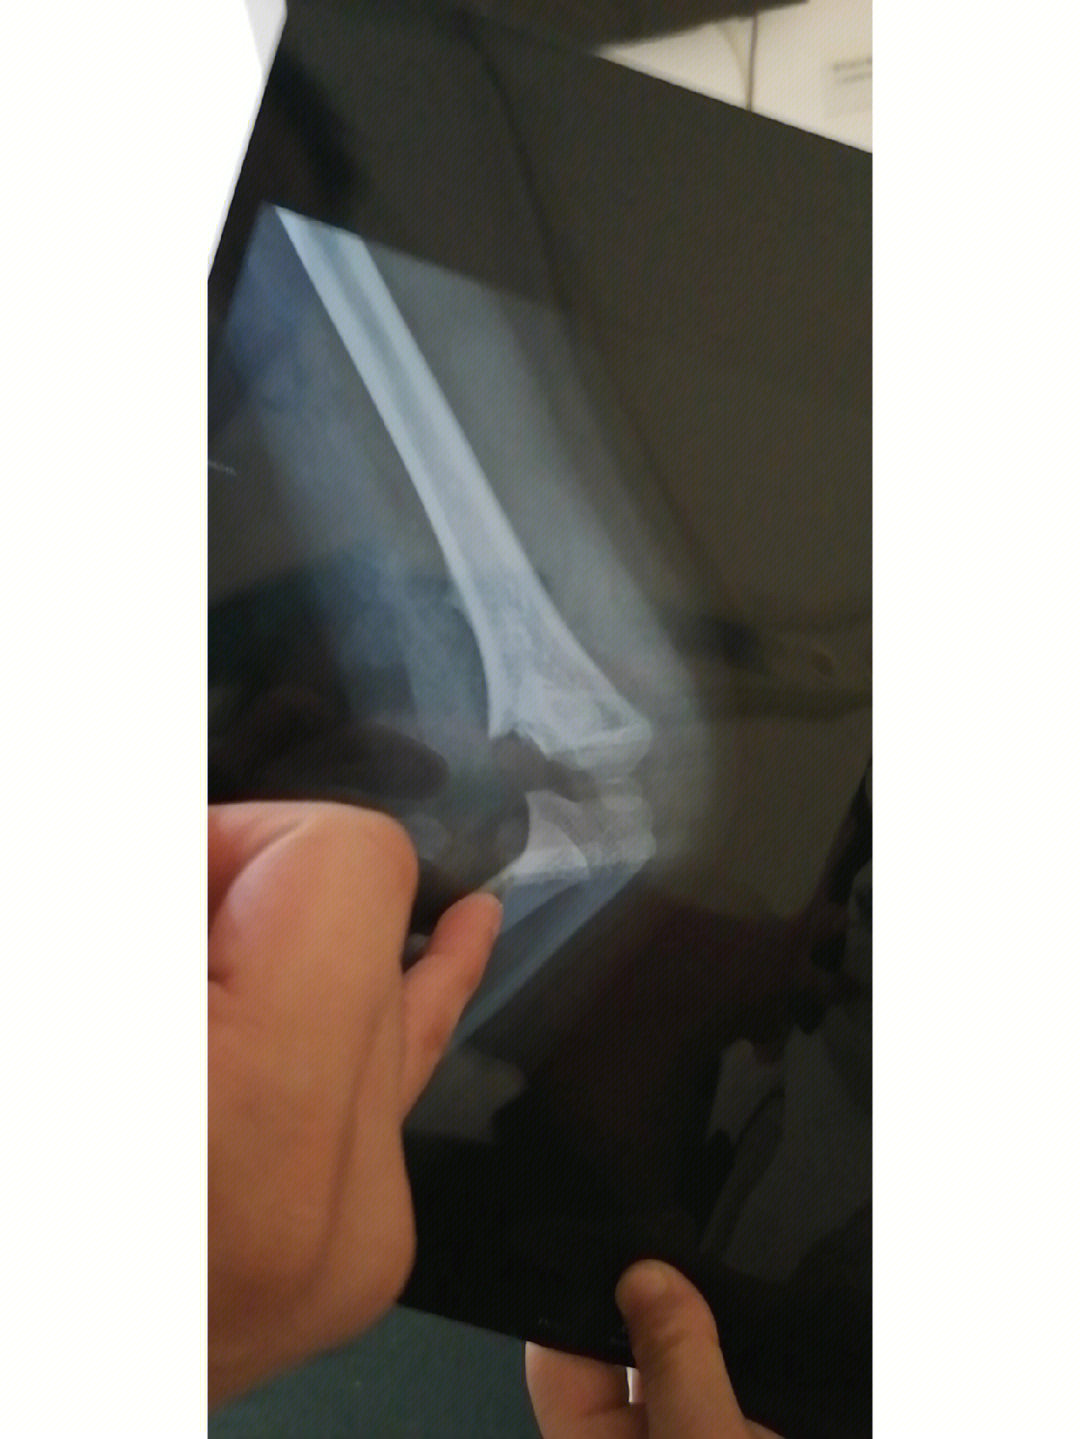 小孩右手肱骨骨折图片图片